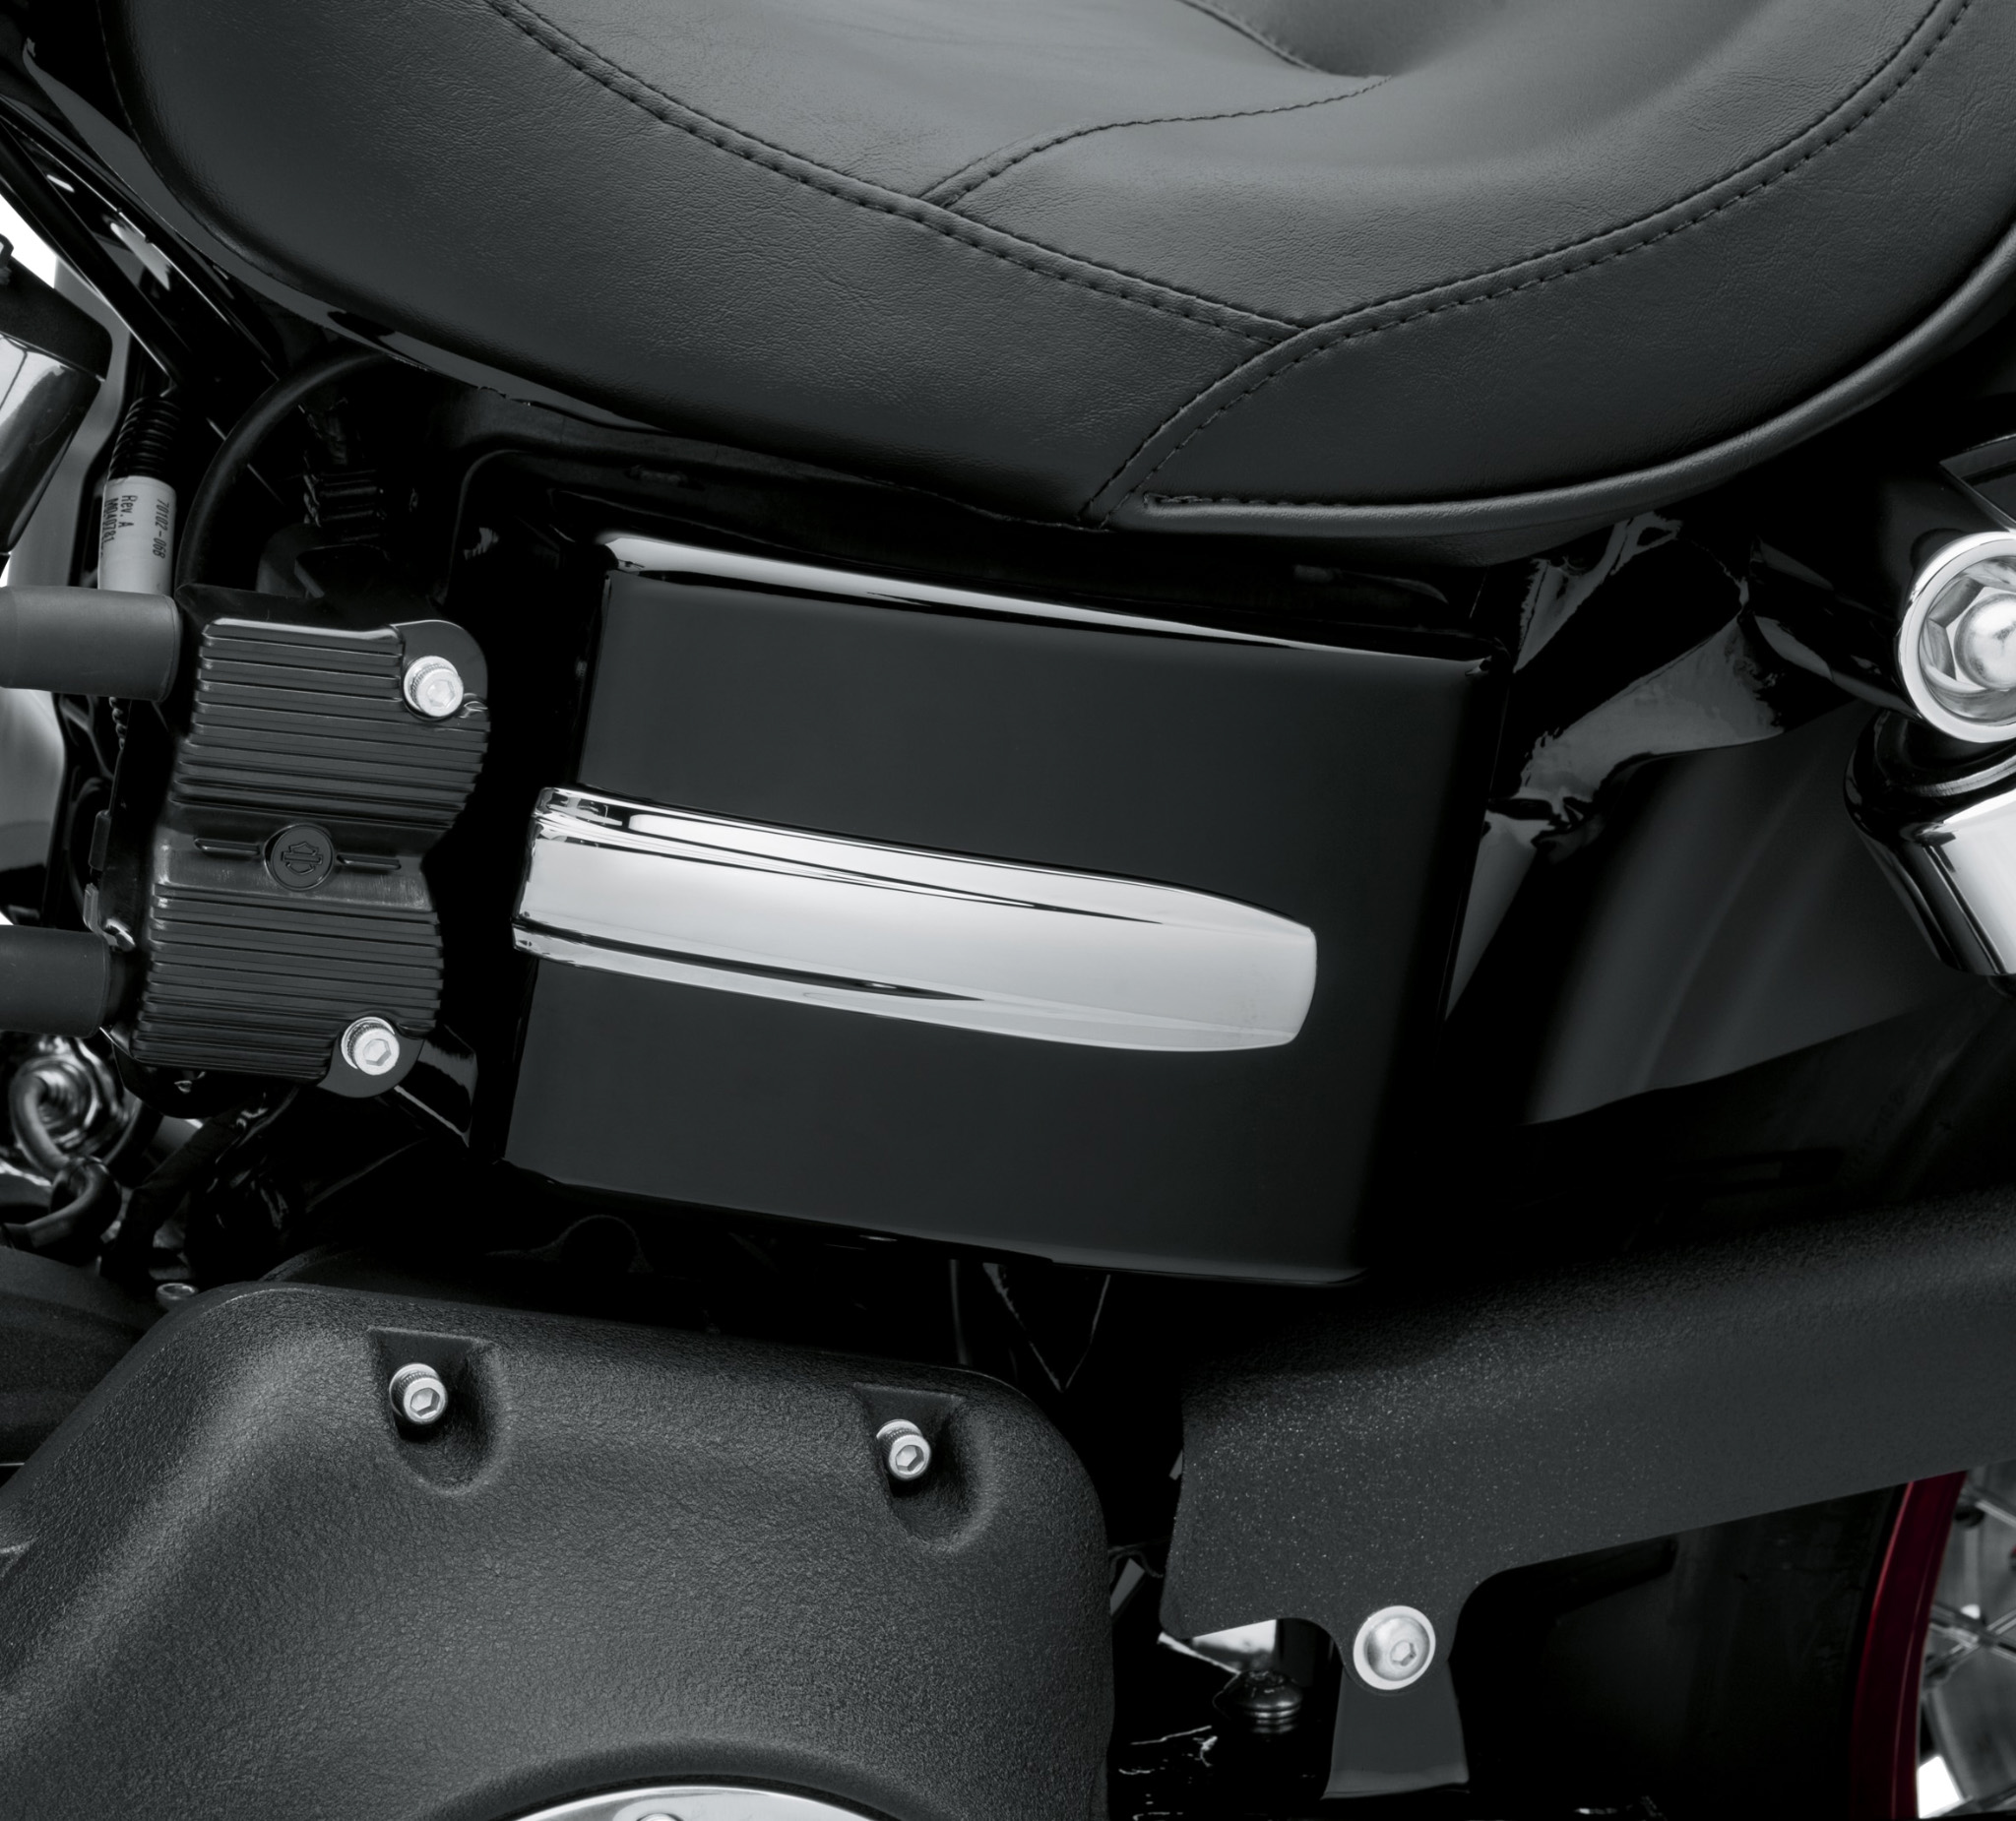 Harley Davidson Dyna Electrical Panel Cover Off 75 Medpharmres Com